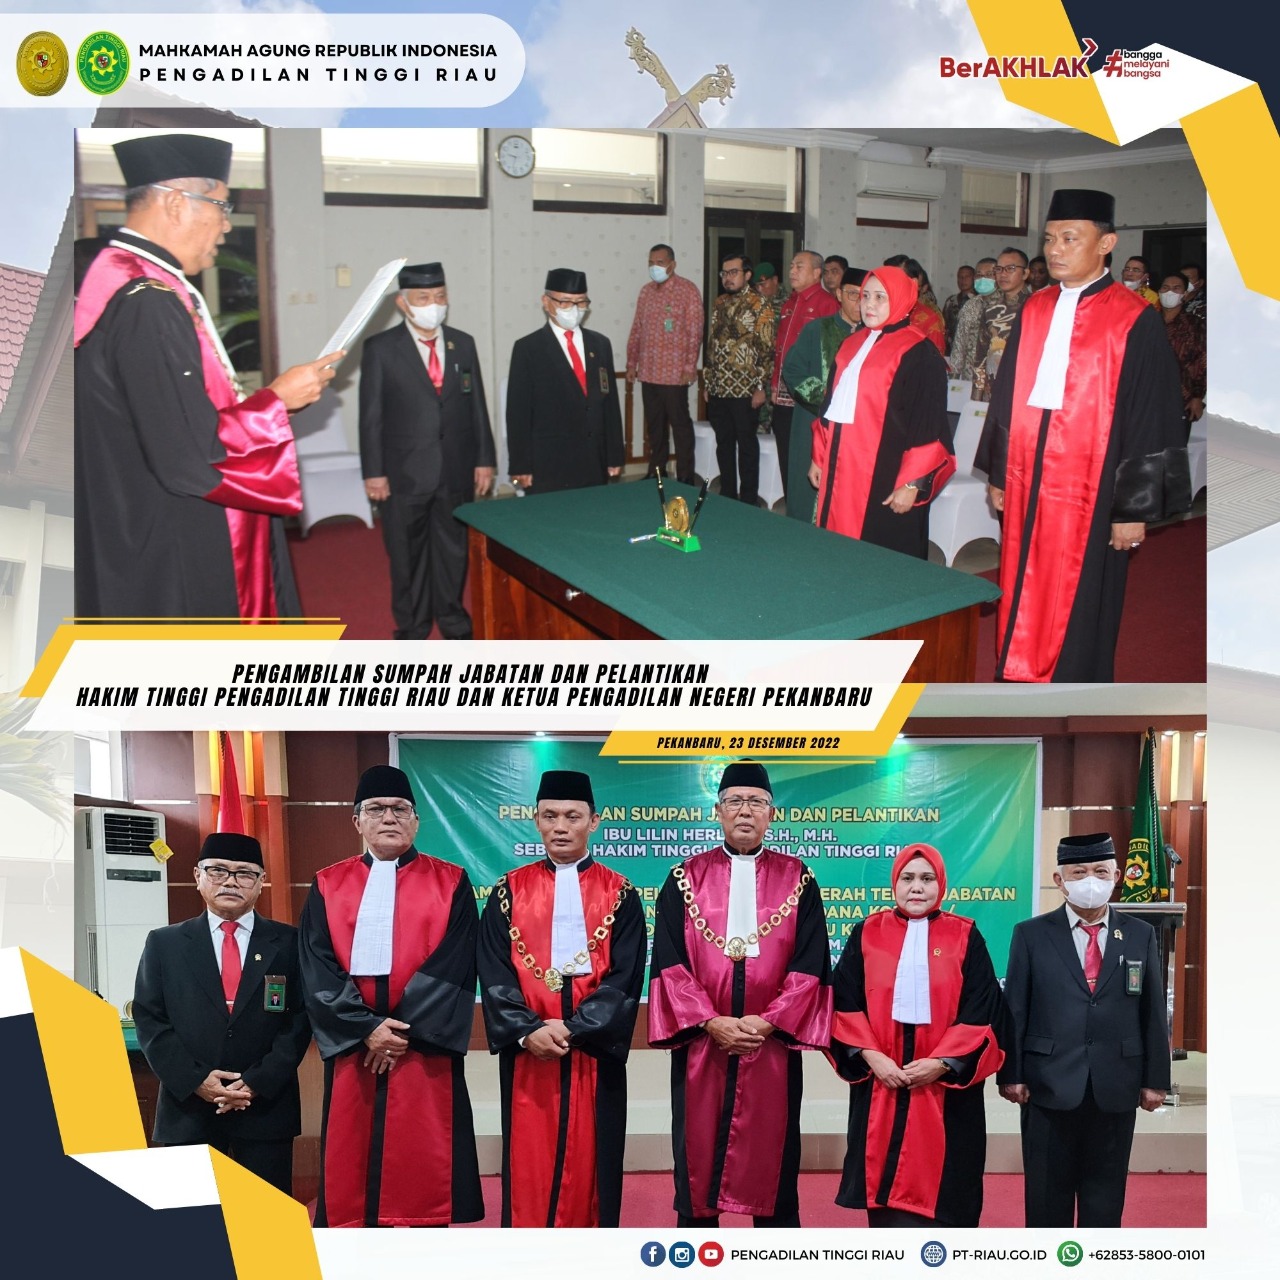 Pengambilan Sumpah Jabatan Dan Pelantikan Hakim Tinggi Pengadilan Tinggi Riau Dan Ketua Pengadilan  Negeri Pekanbaru